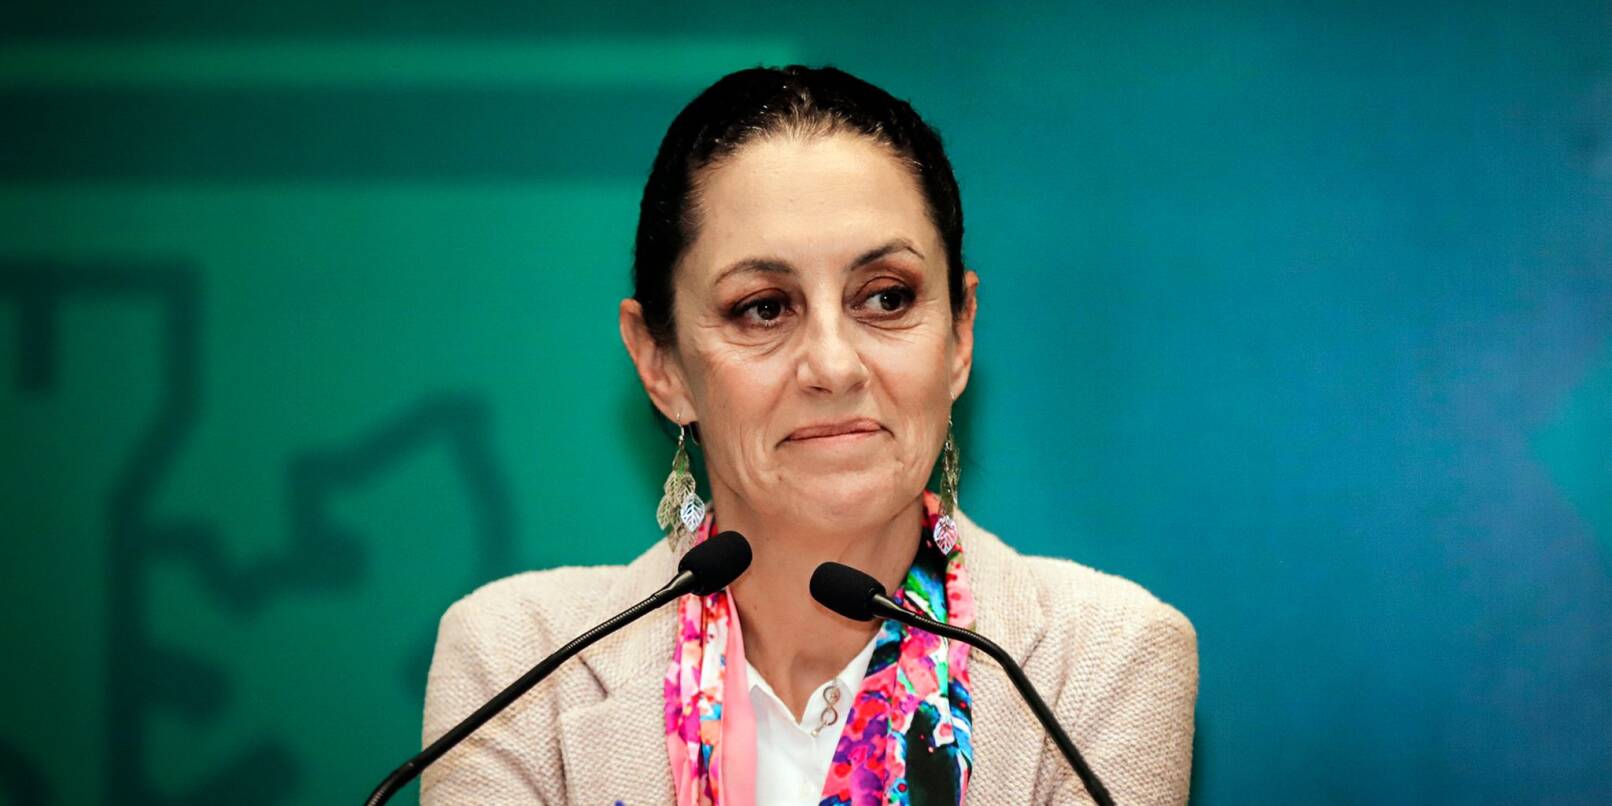 Claudia Sheinbaum räumte den Posten als Bürgermeisterin von Mexiko-Stadt.